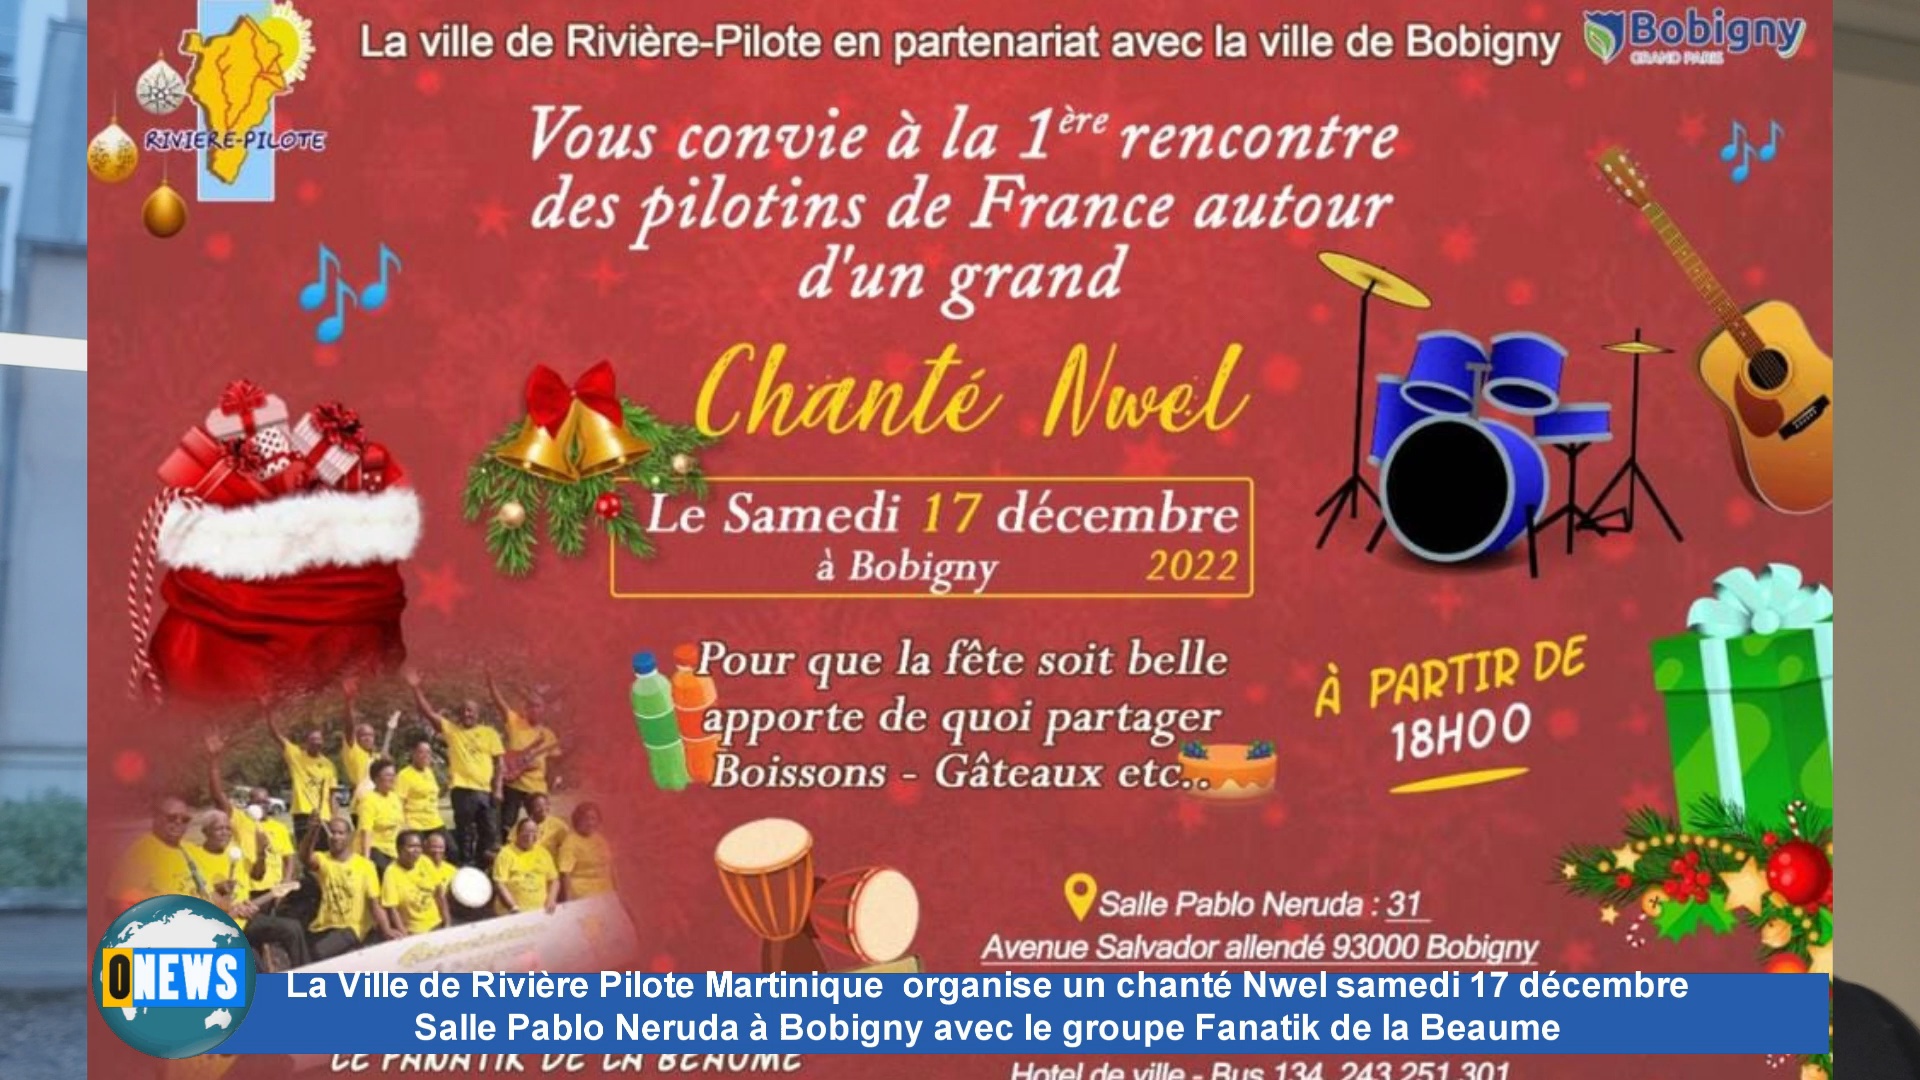 [Vidéo] La ville de Rivière Pilote Martinique organise un chanté Nwel samedi 17 décembre Salle Pablo Neruda à Bobigny